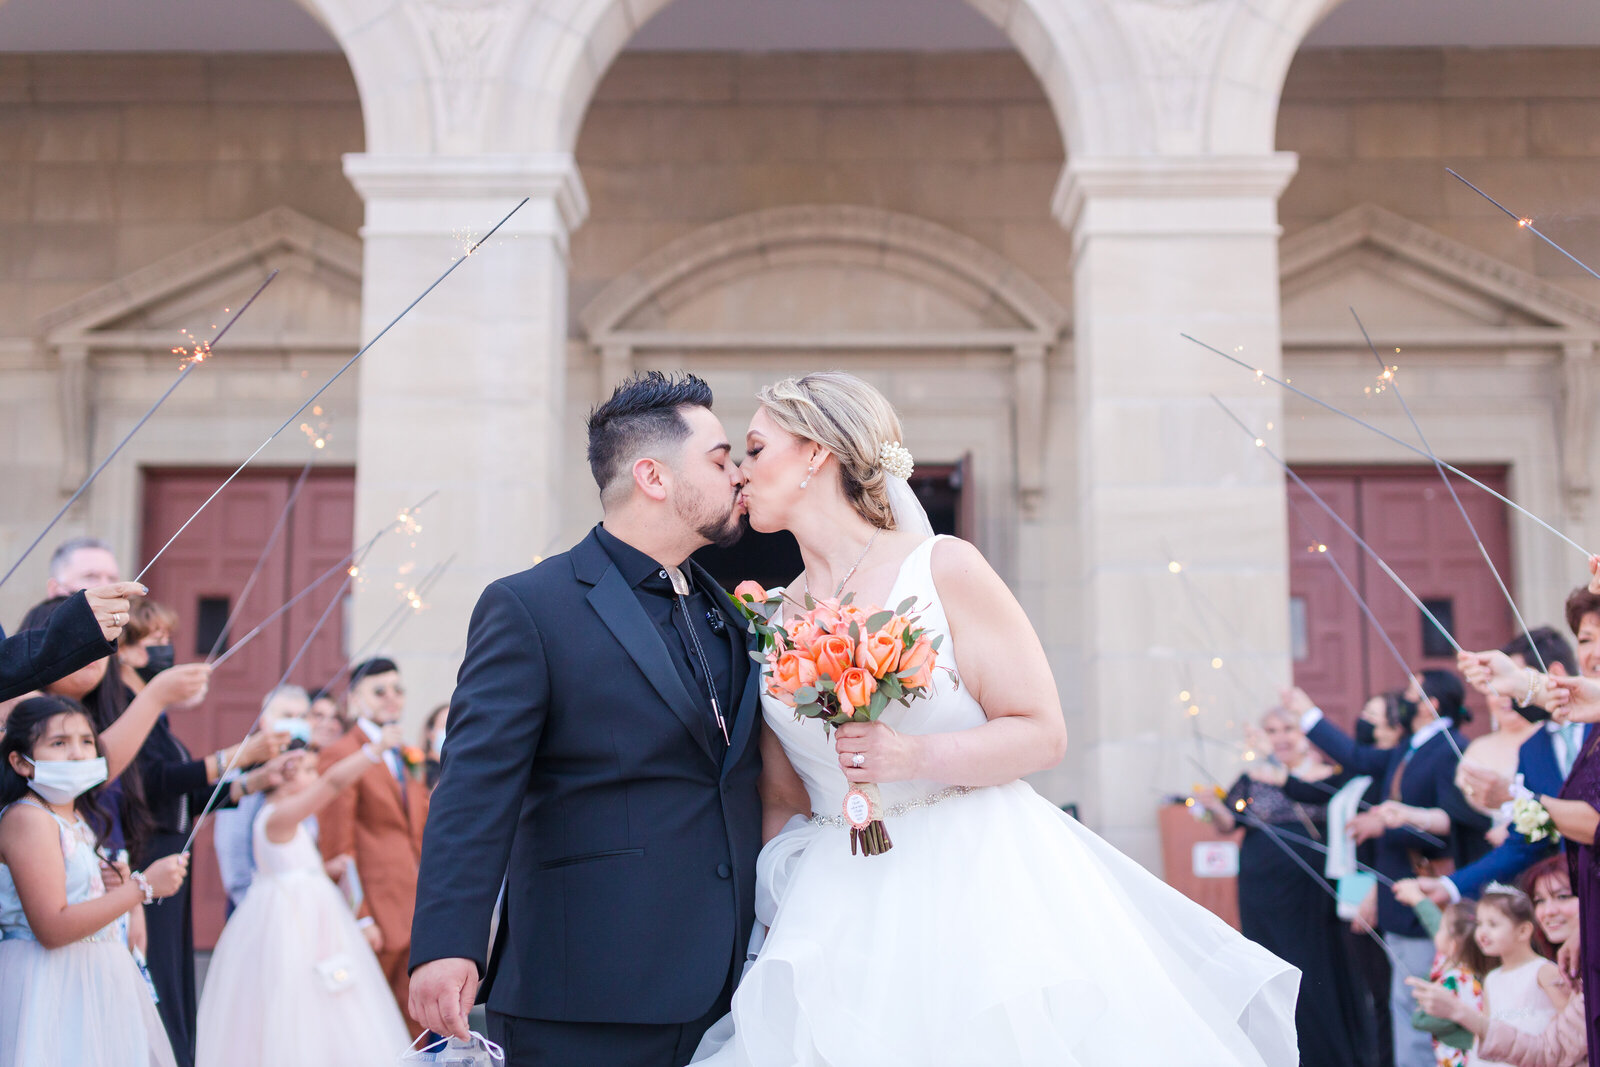 Melissa & Edwardo's Wedding 4-23-21 Maira Ochoa Photography-1170